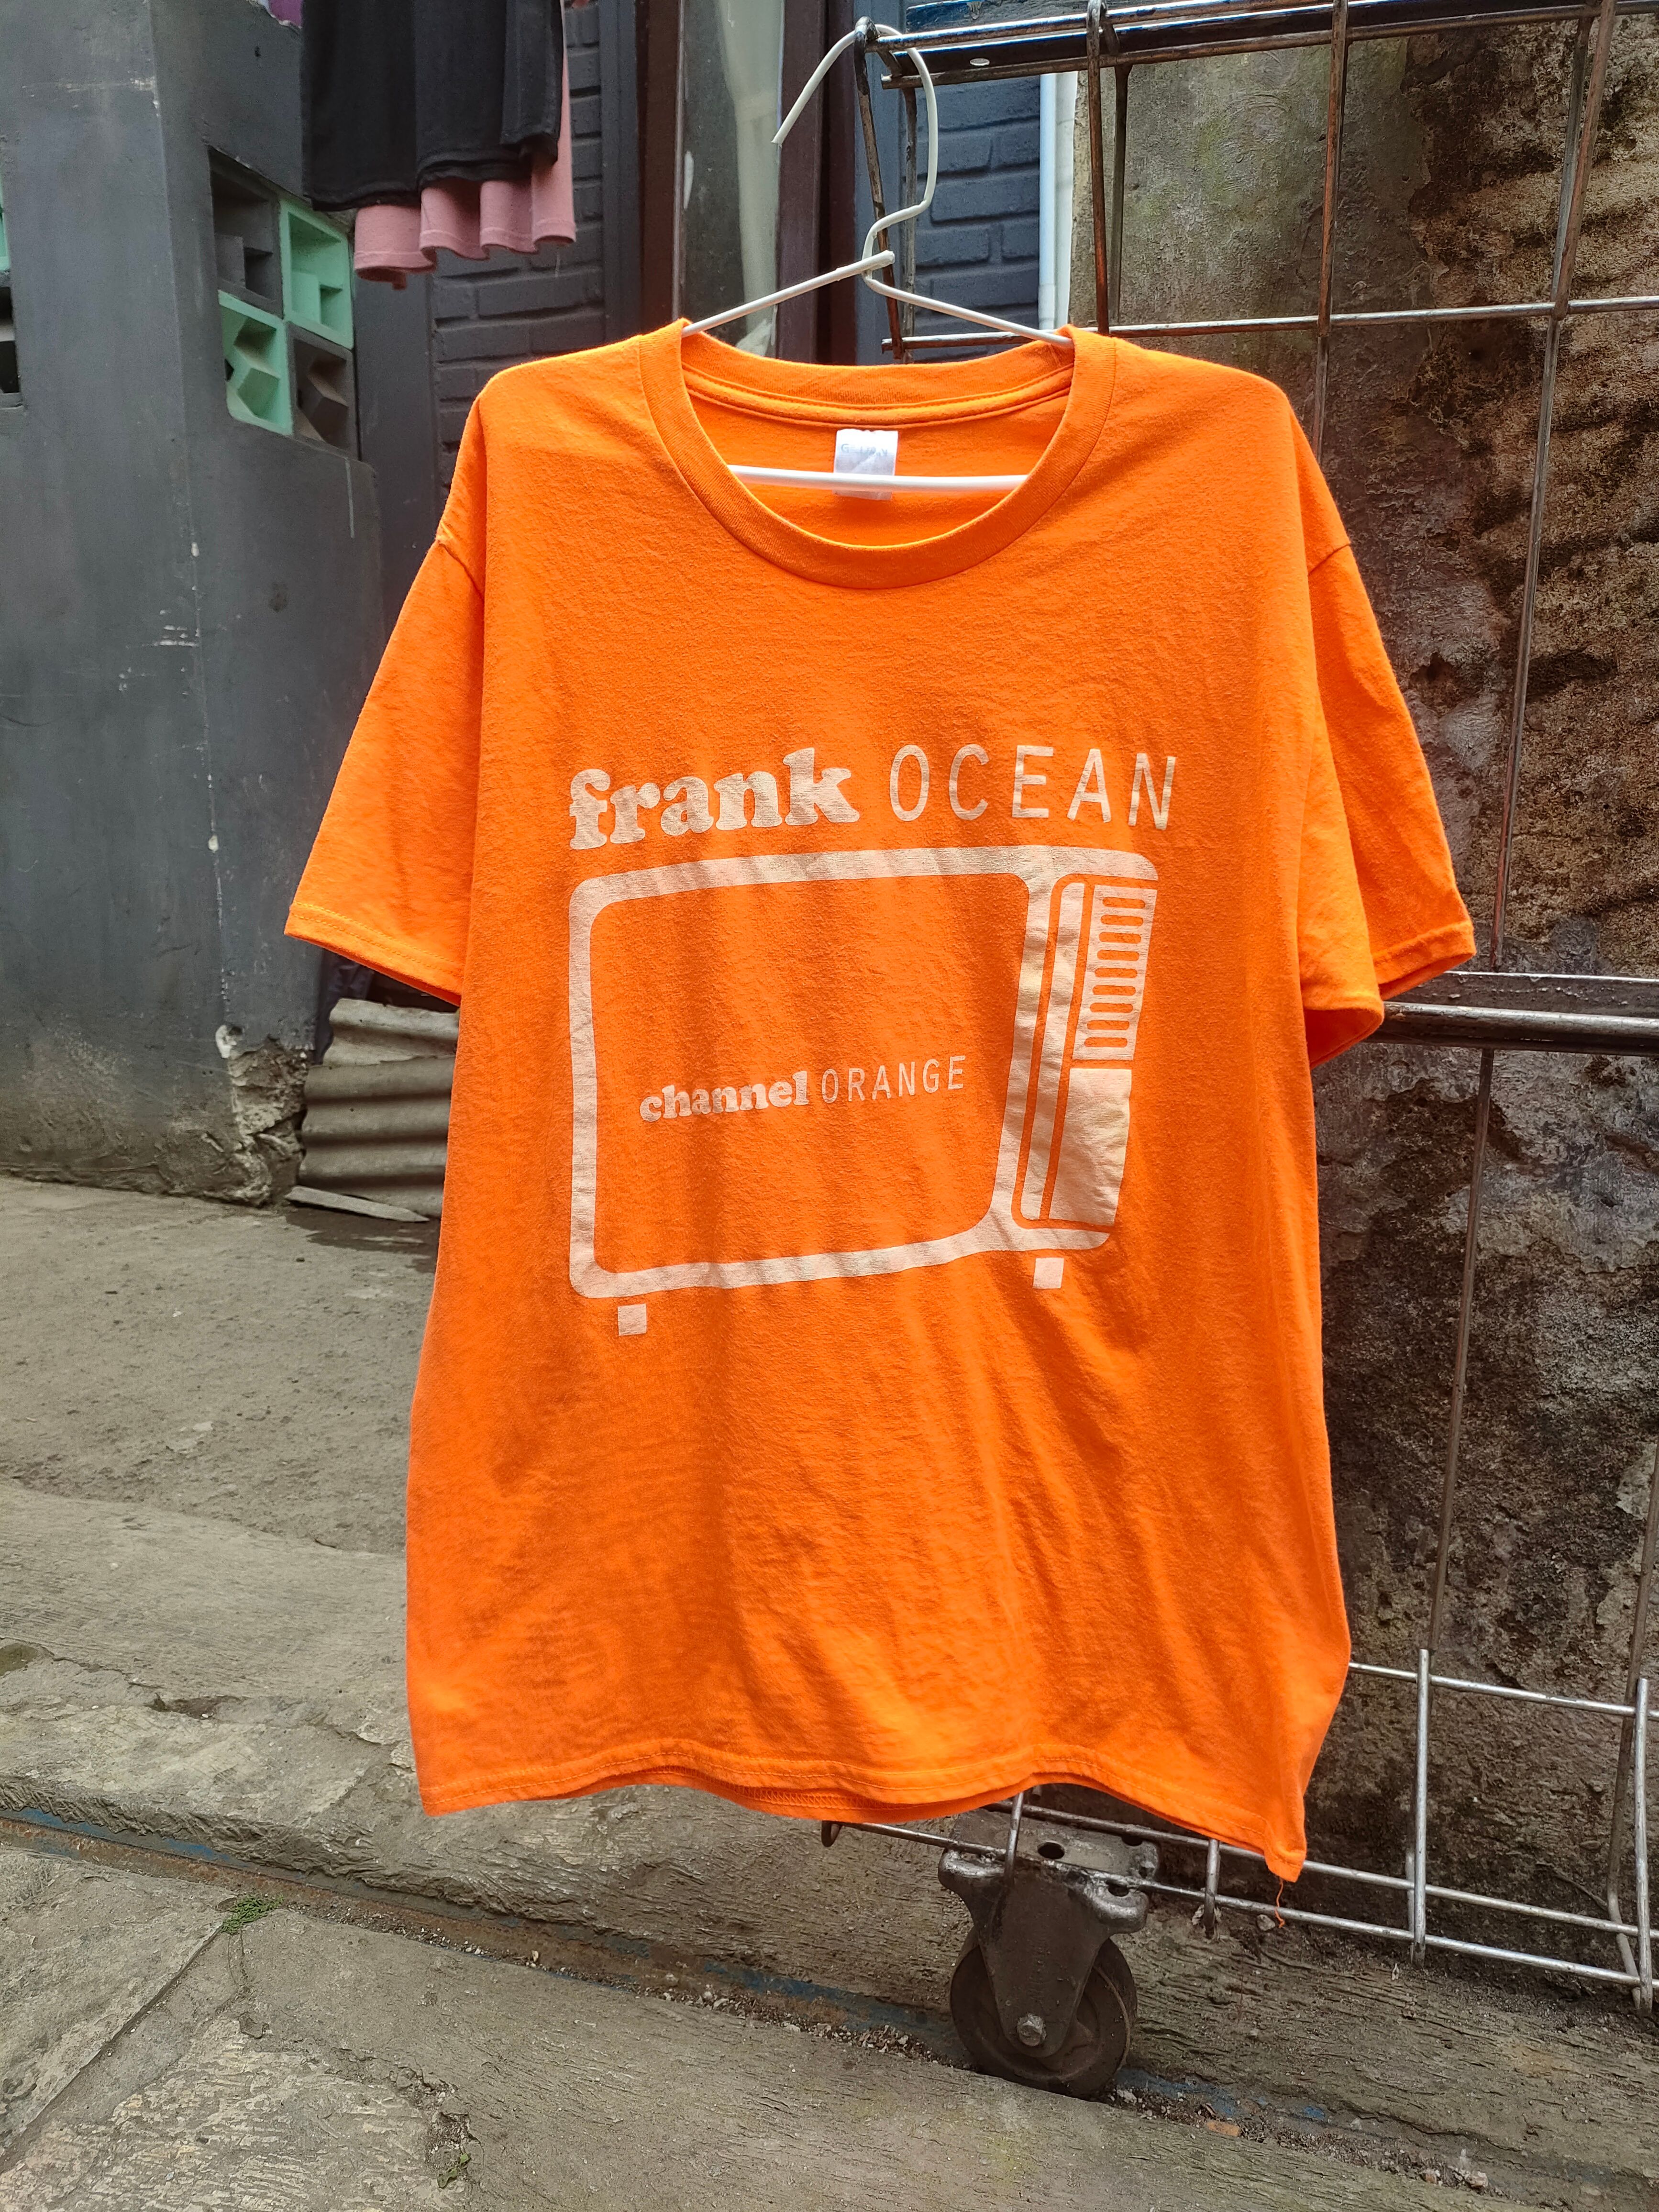 Vintage - Frank Ocean - Channel Orange - Def Jam Recordings - 1